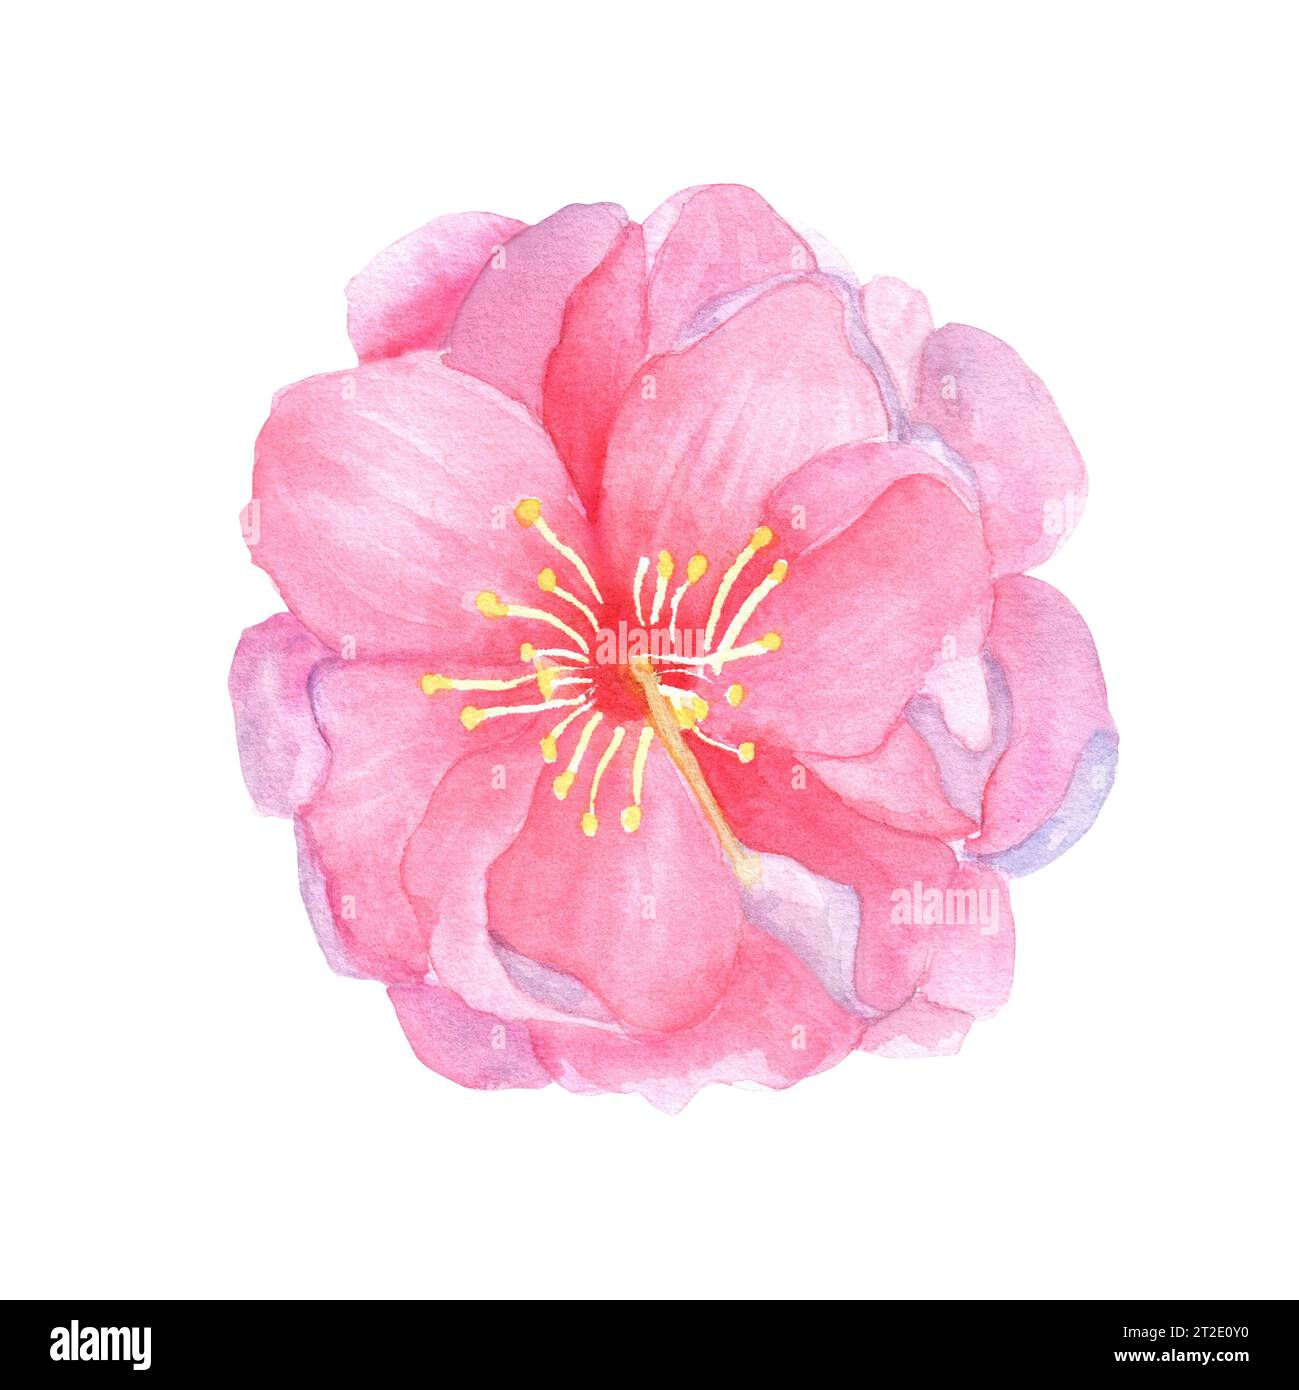 Illustrazione ad acquerello disegnata a mano. Splendido fiore rosa di ciliegio sakura per lavori di design. Foto Stock